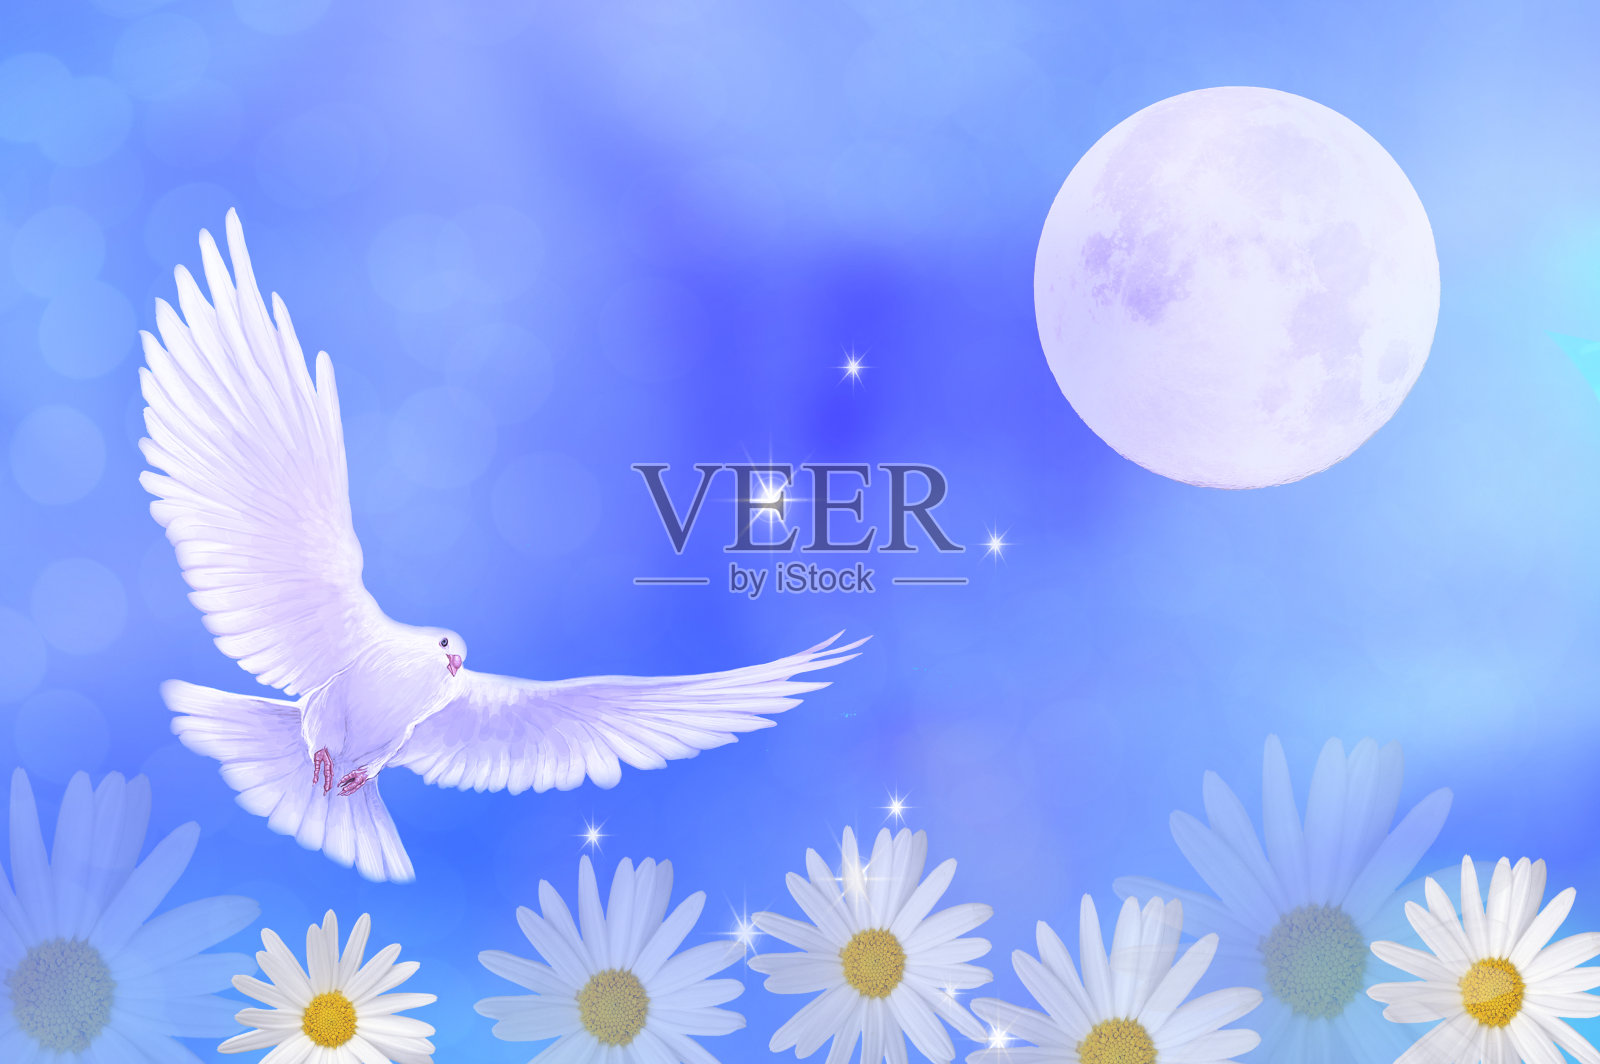 中秋佳节月光下的白鸽和美丽的玛格丽特插画图片素材